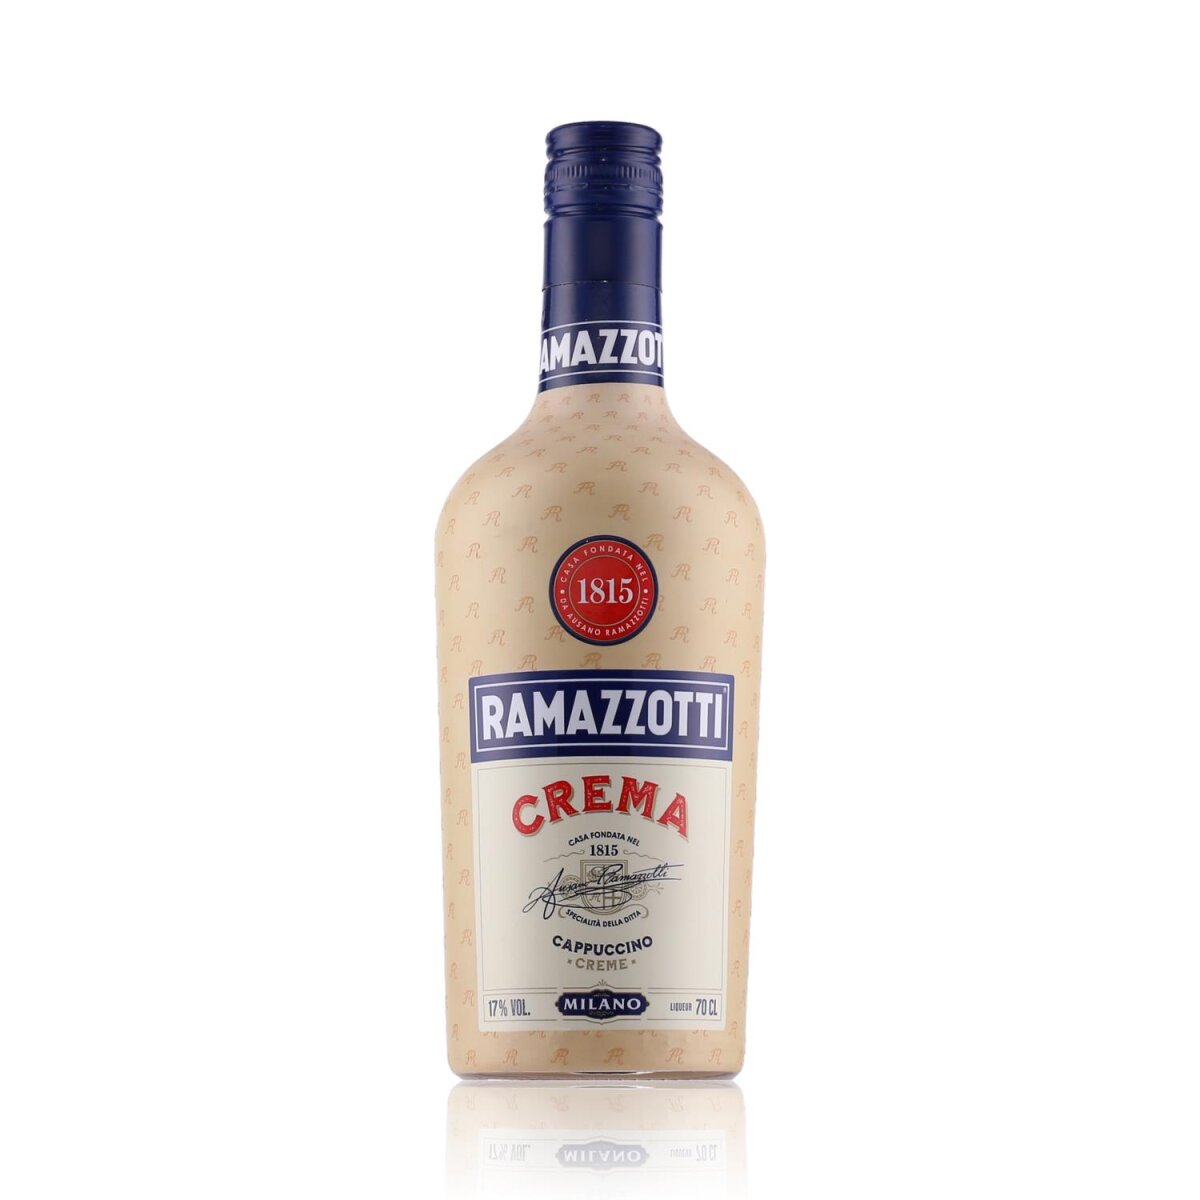 Ramazzotti Crema Cappuccino Likör 0,7l, € 17% Vol. 14,09